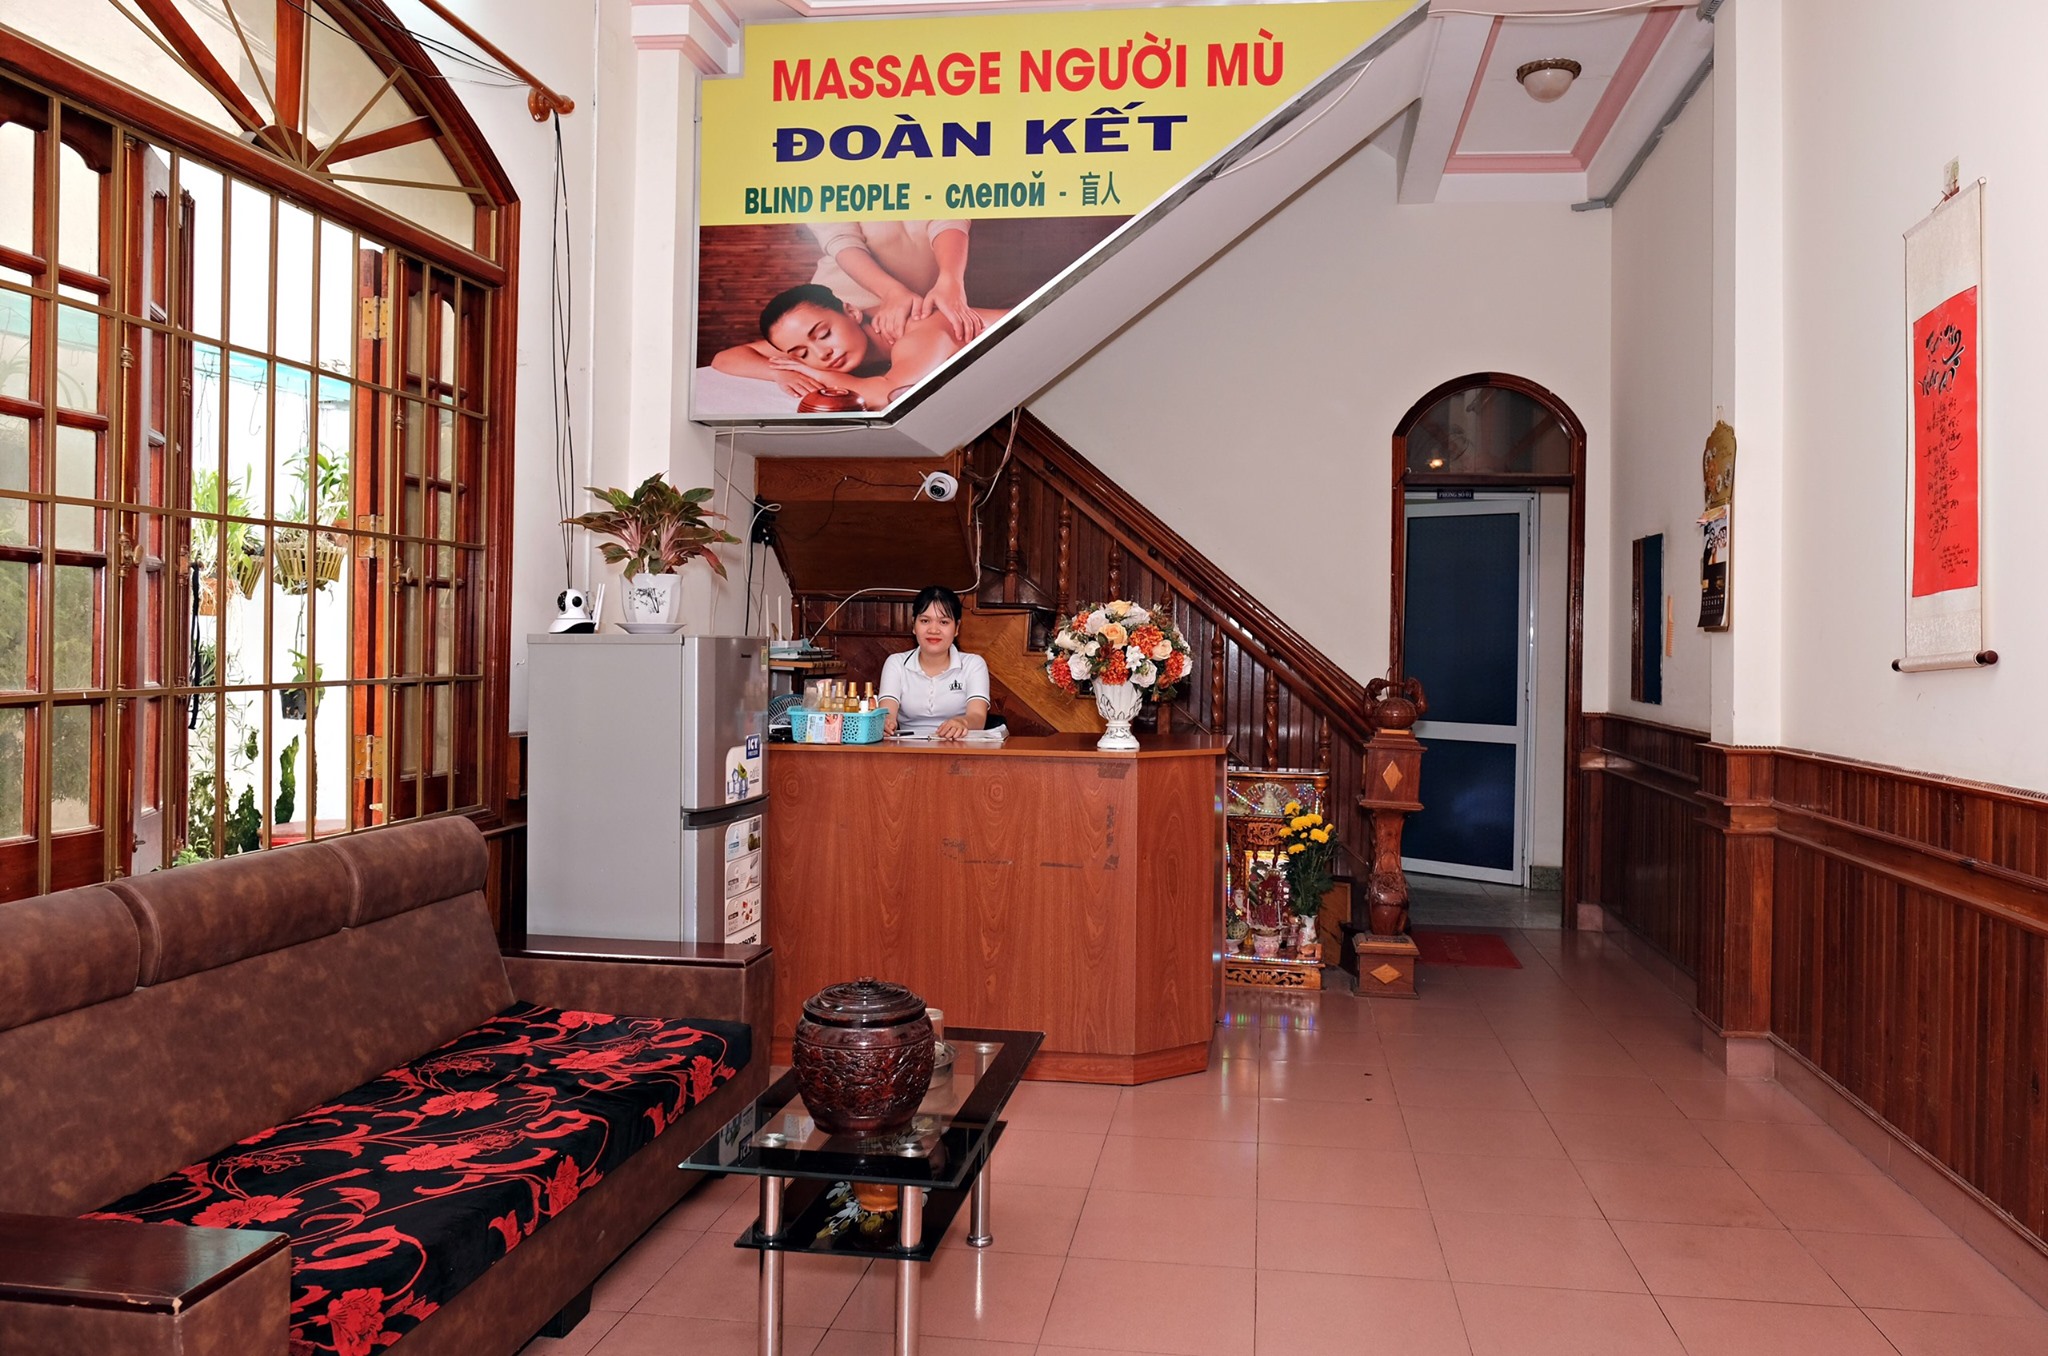 Đoàn Kết - Cơ Sở Massage Người Mù Tại Nha Trang 